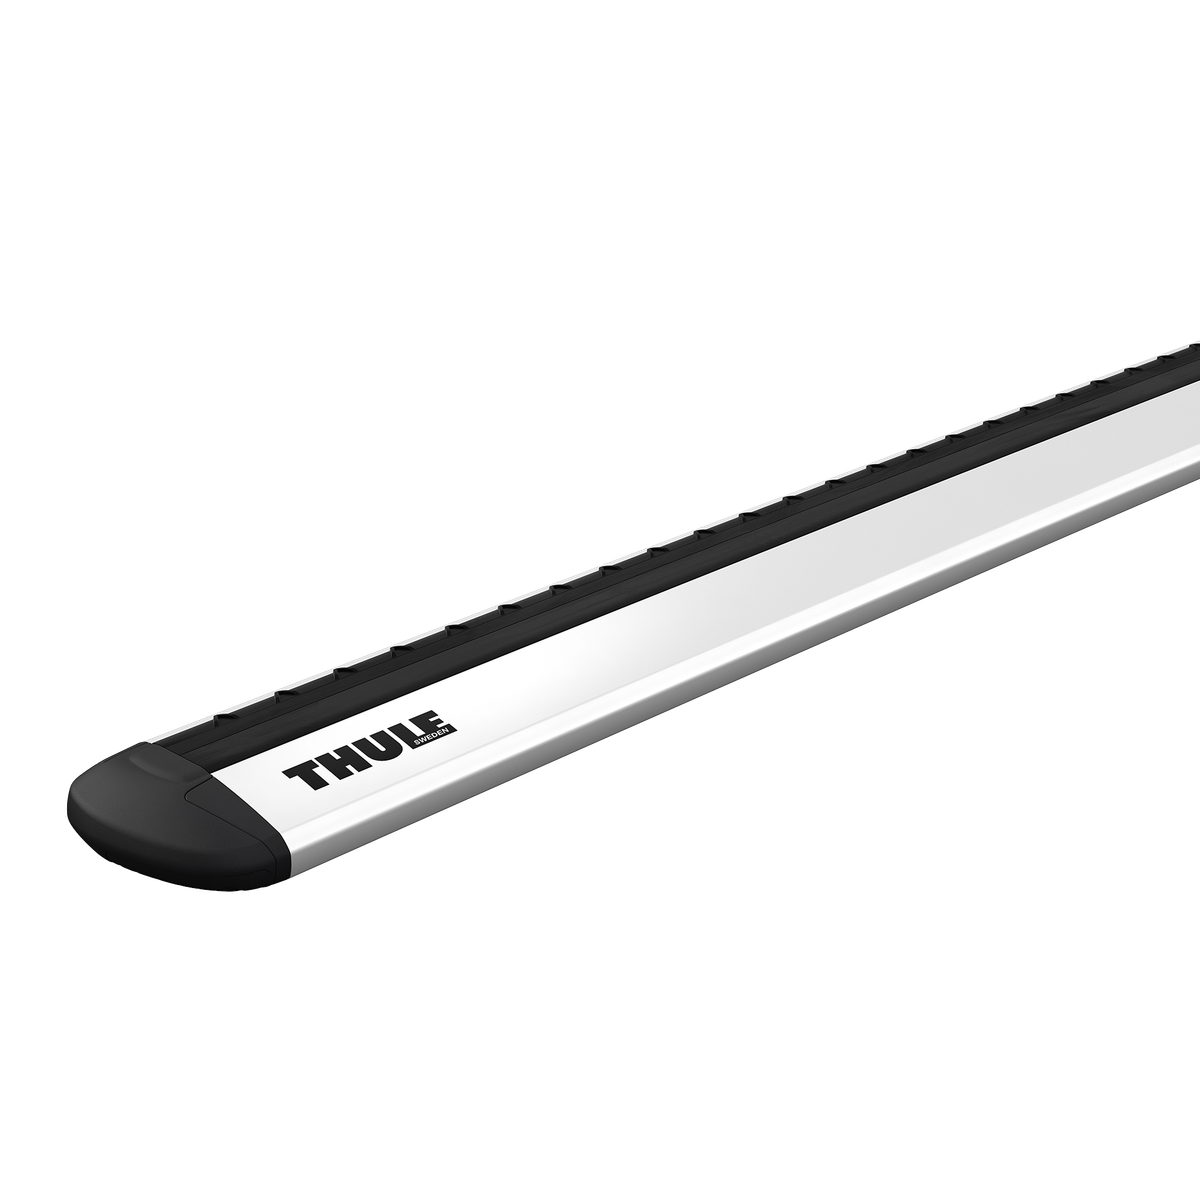 Thule Wingbar Evo 150 cm roof bar 2-pack aluminium